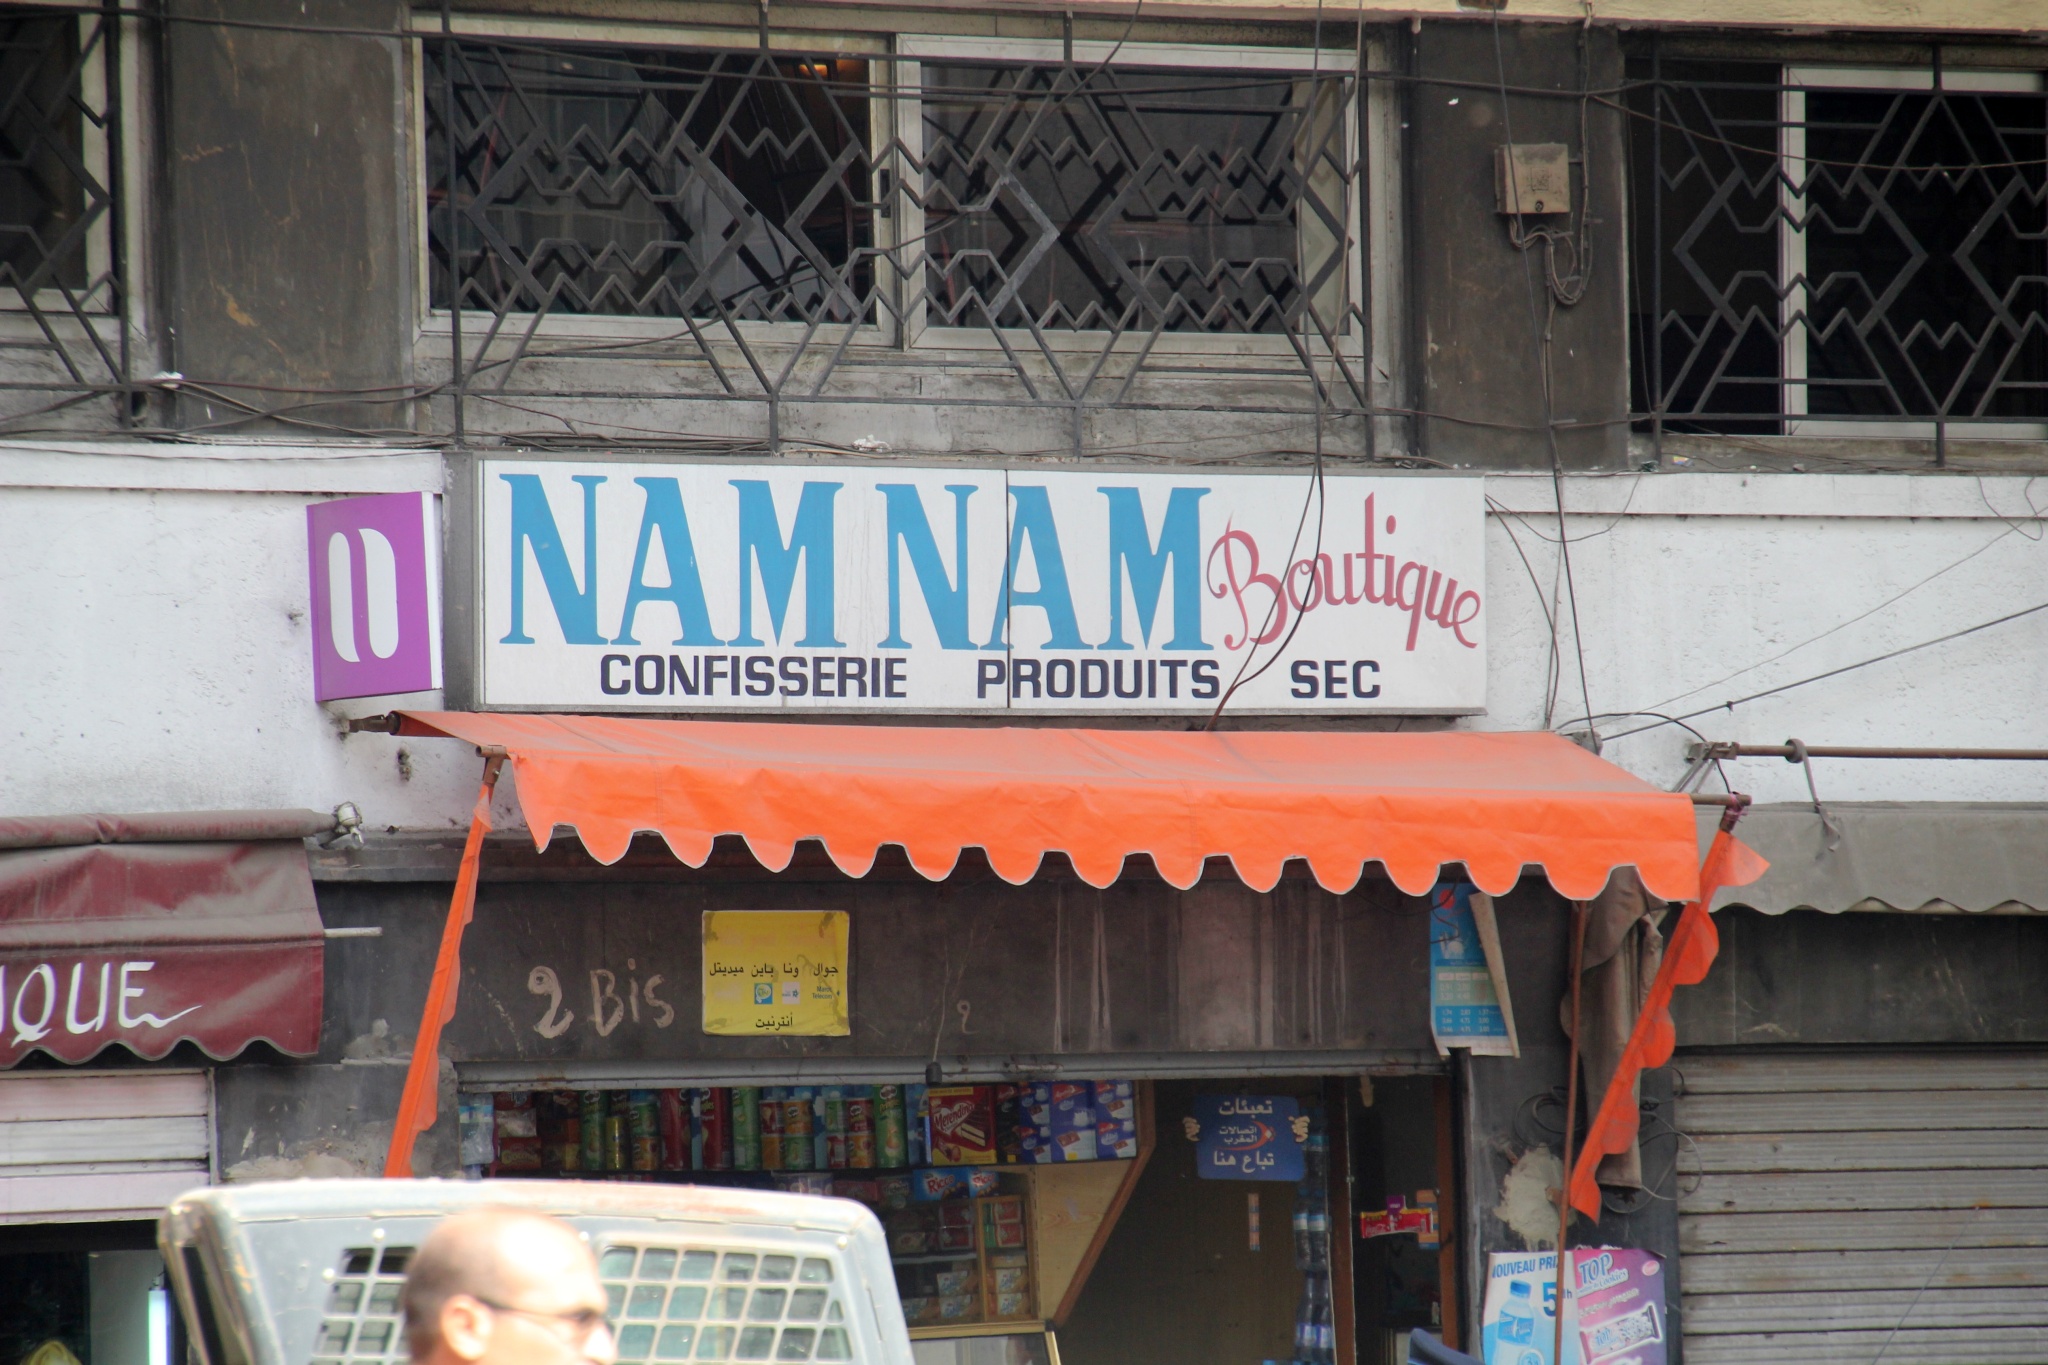 Namnam Boutique